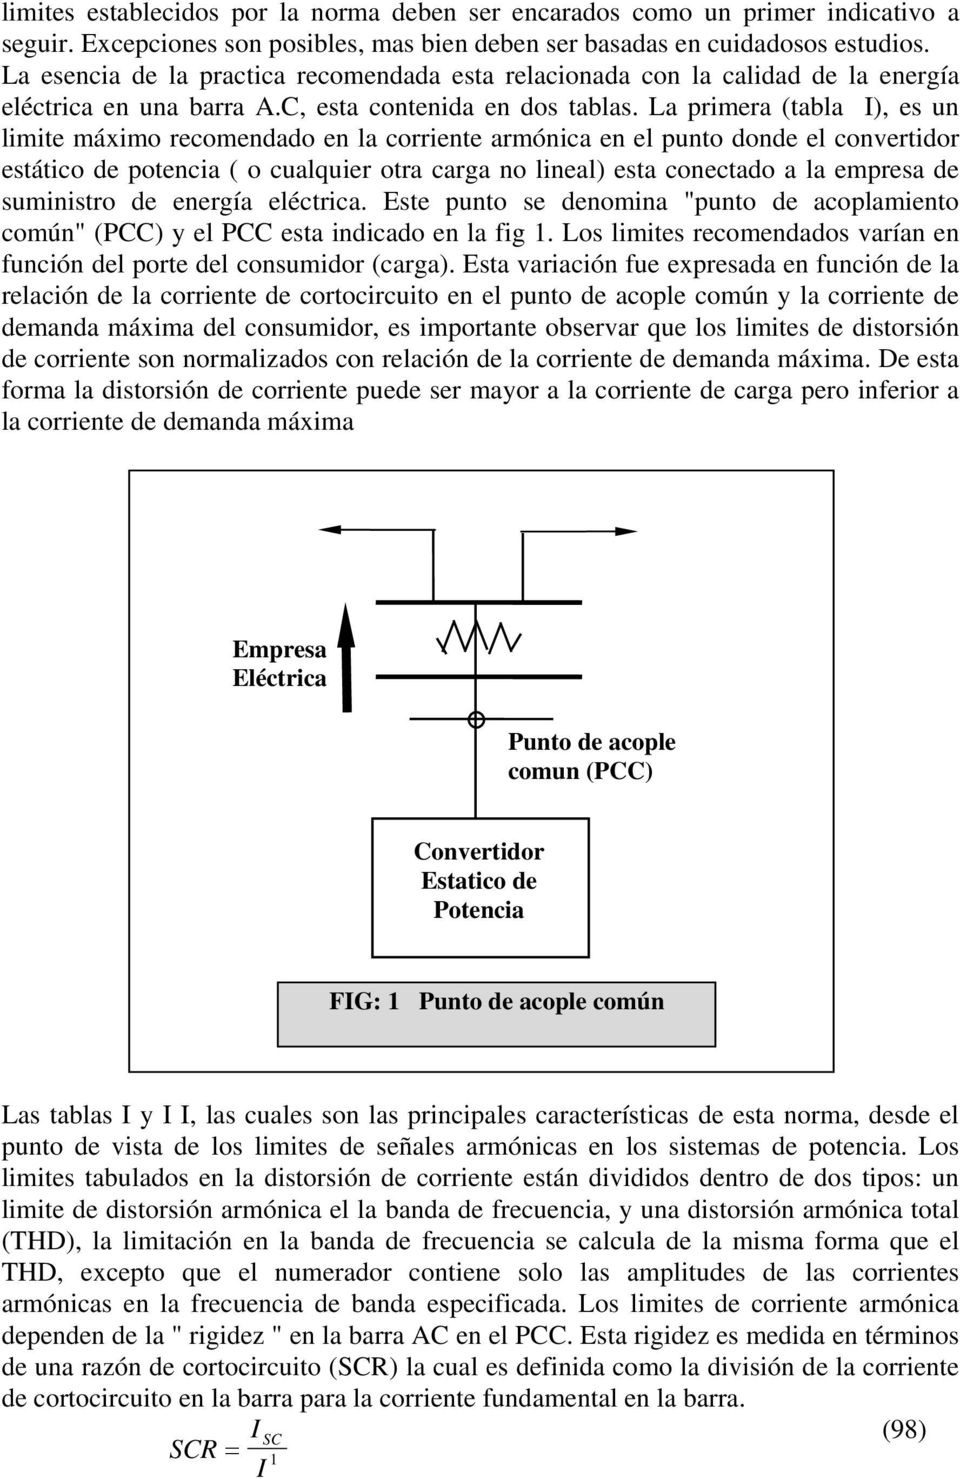 La primera (tabla I), es un limite máximo recomendado en la corriente armónica en el punto donde el convertidor estático de potencia ( o cualquier otra carga no lineal) esta conectado a la empresa de